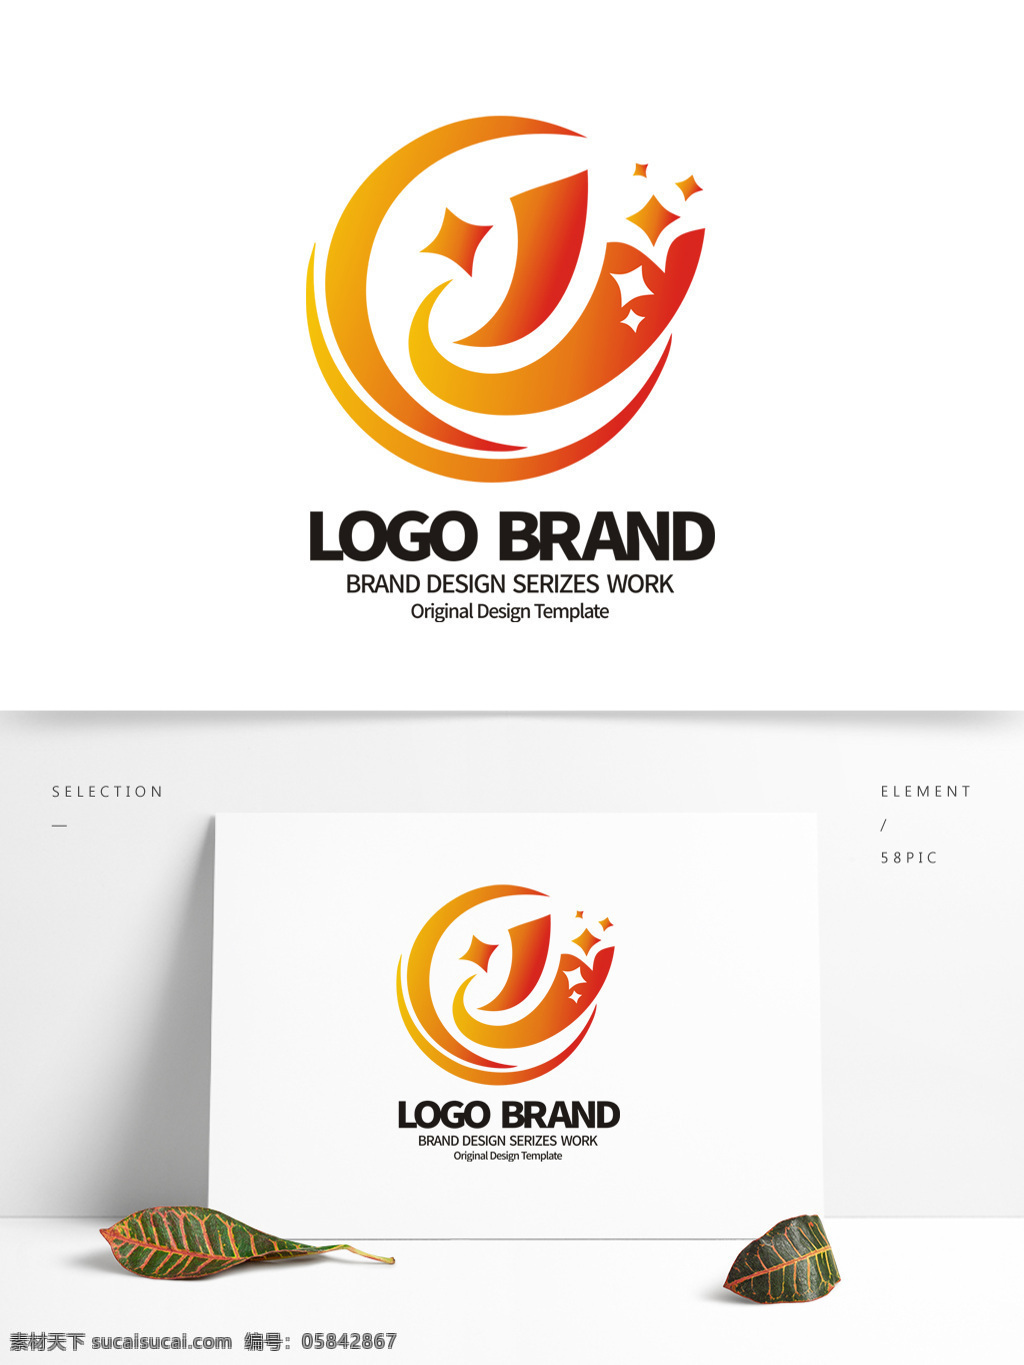 简约 红 黄 星形 c 字母 公司 logo 标志设计 主页图标 y j字母标志 公司标志设计 企业 会徽标志设计 企业标志设计